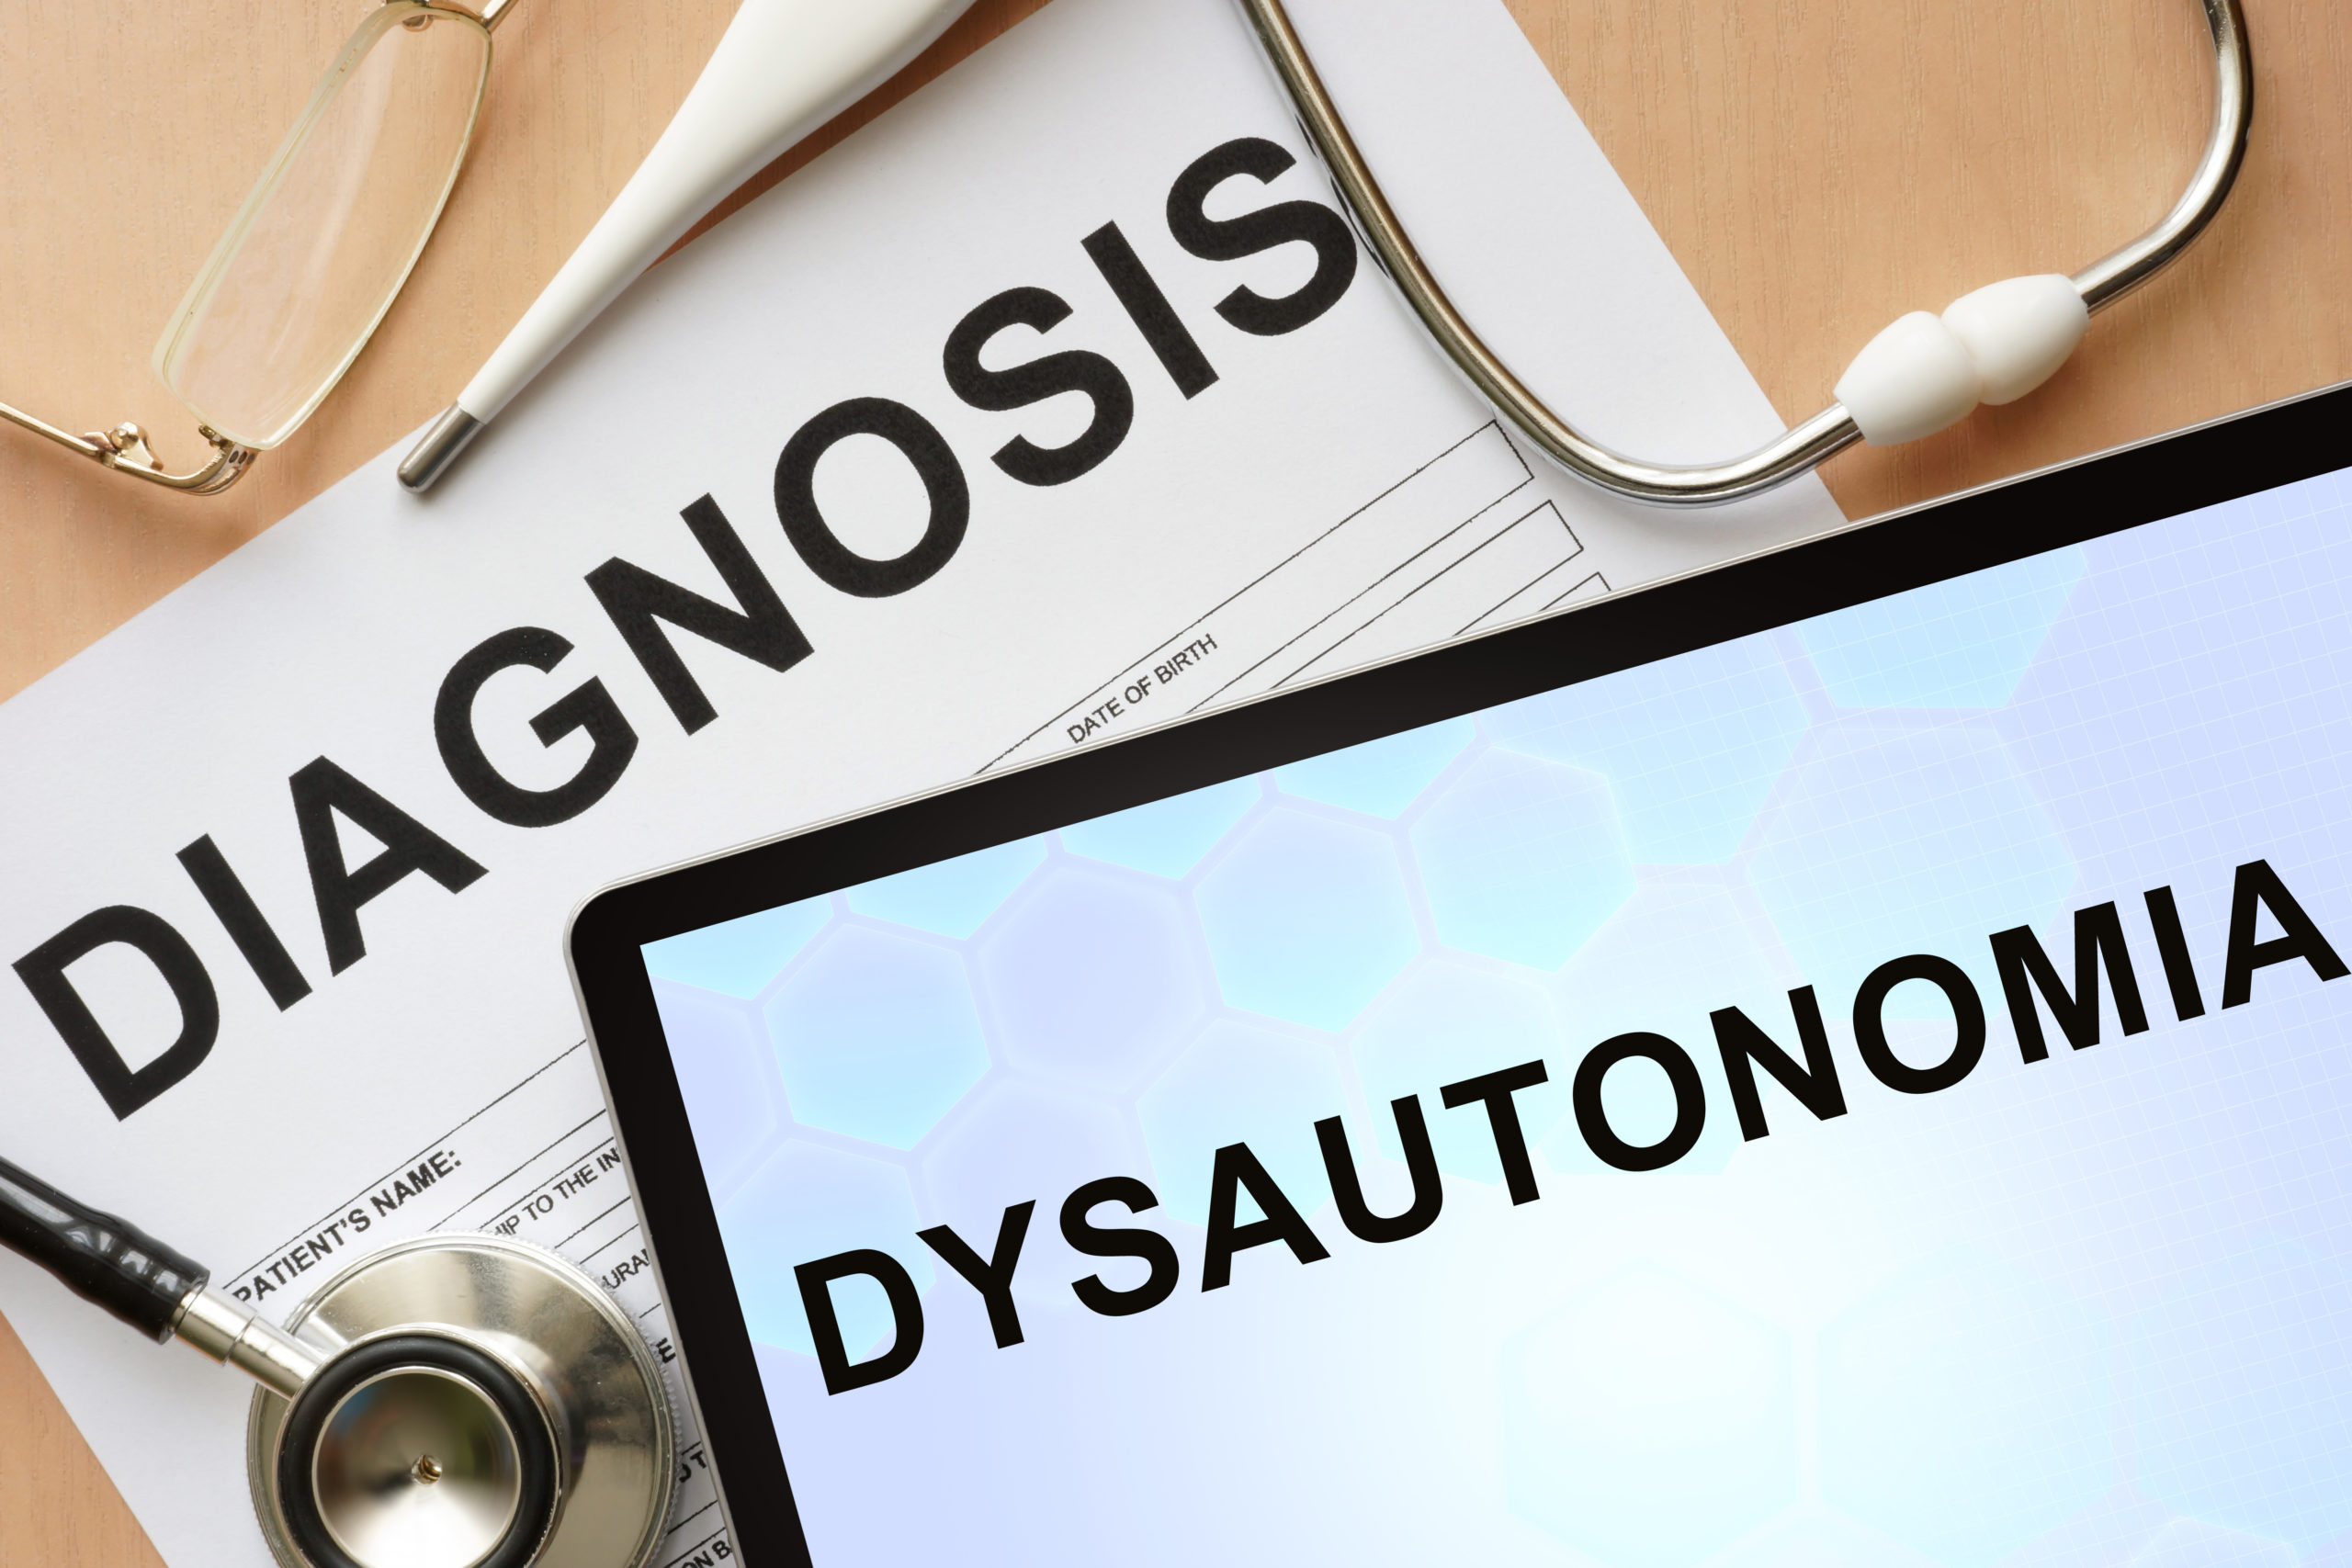 Diagnosis: Dysautonomia